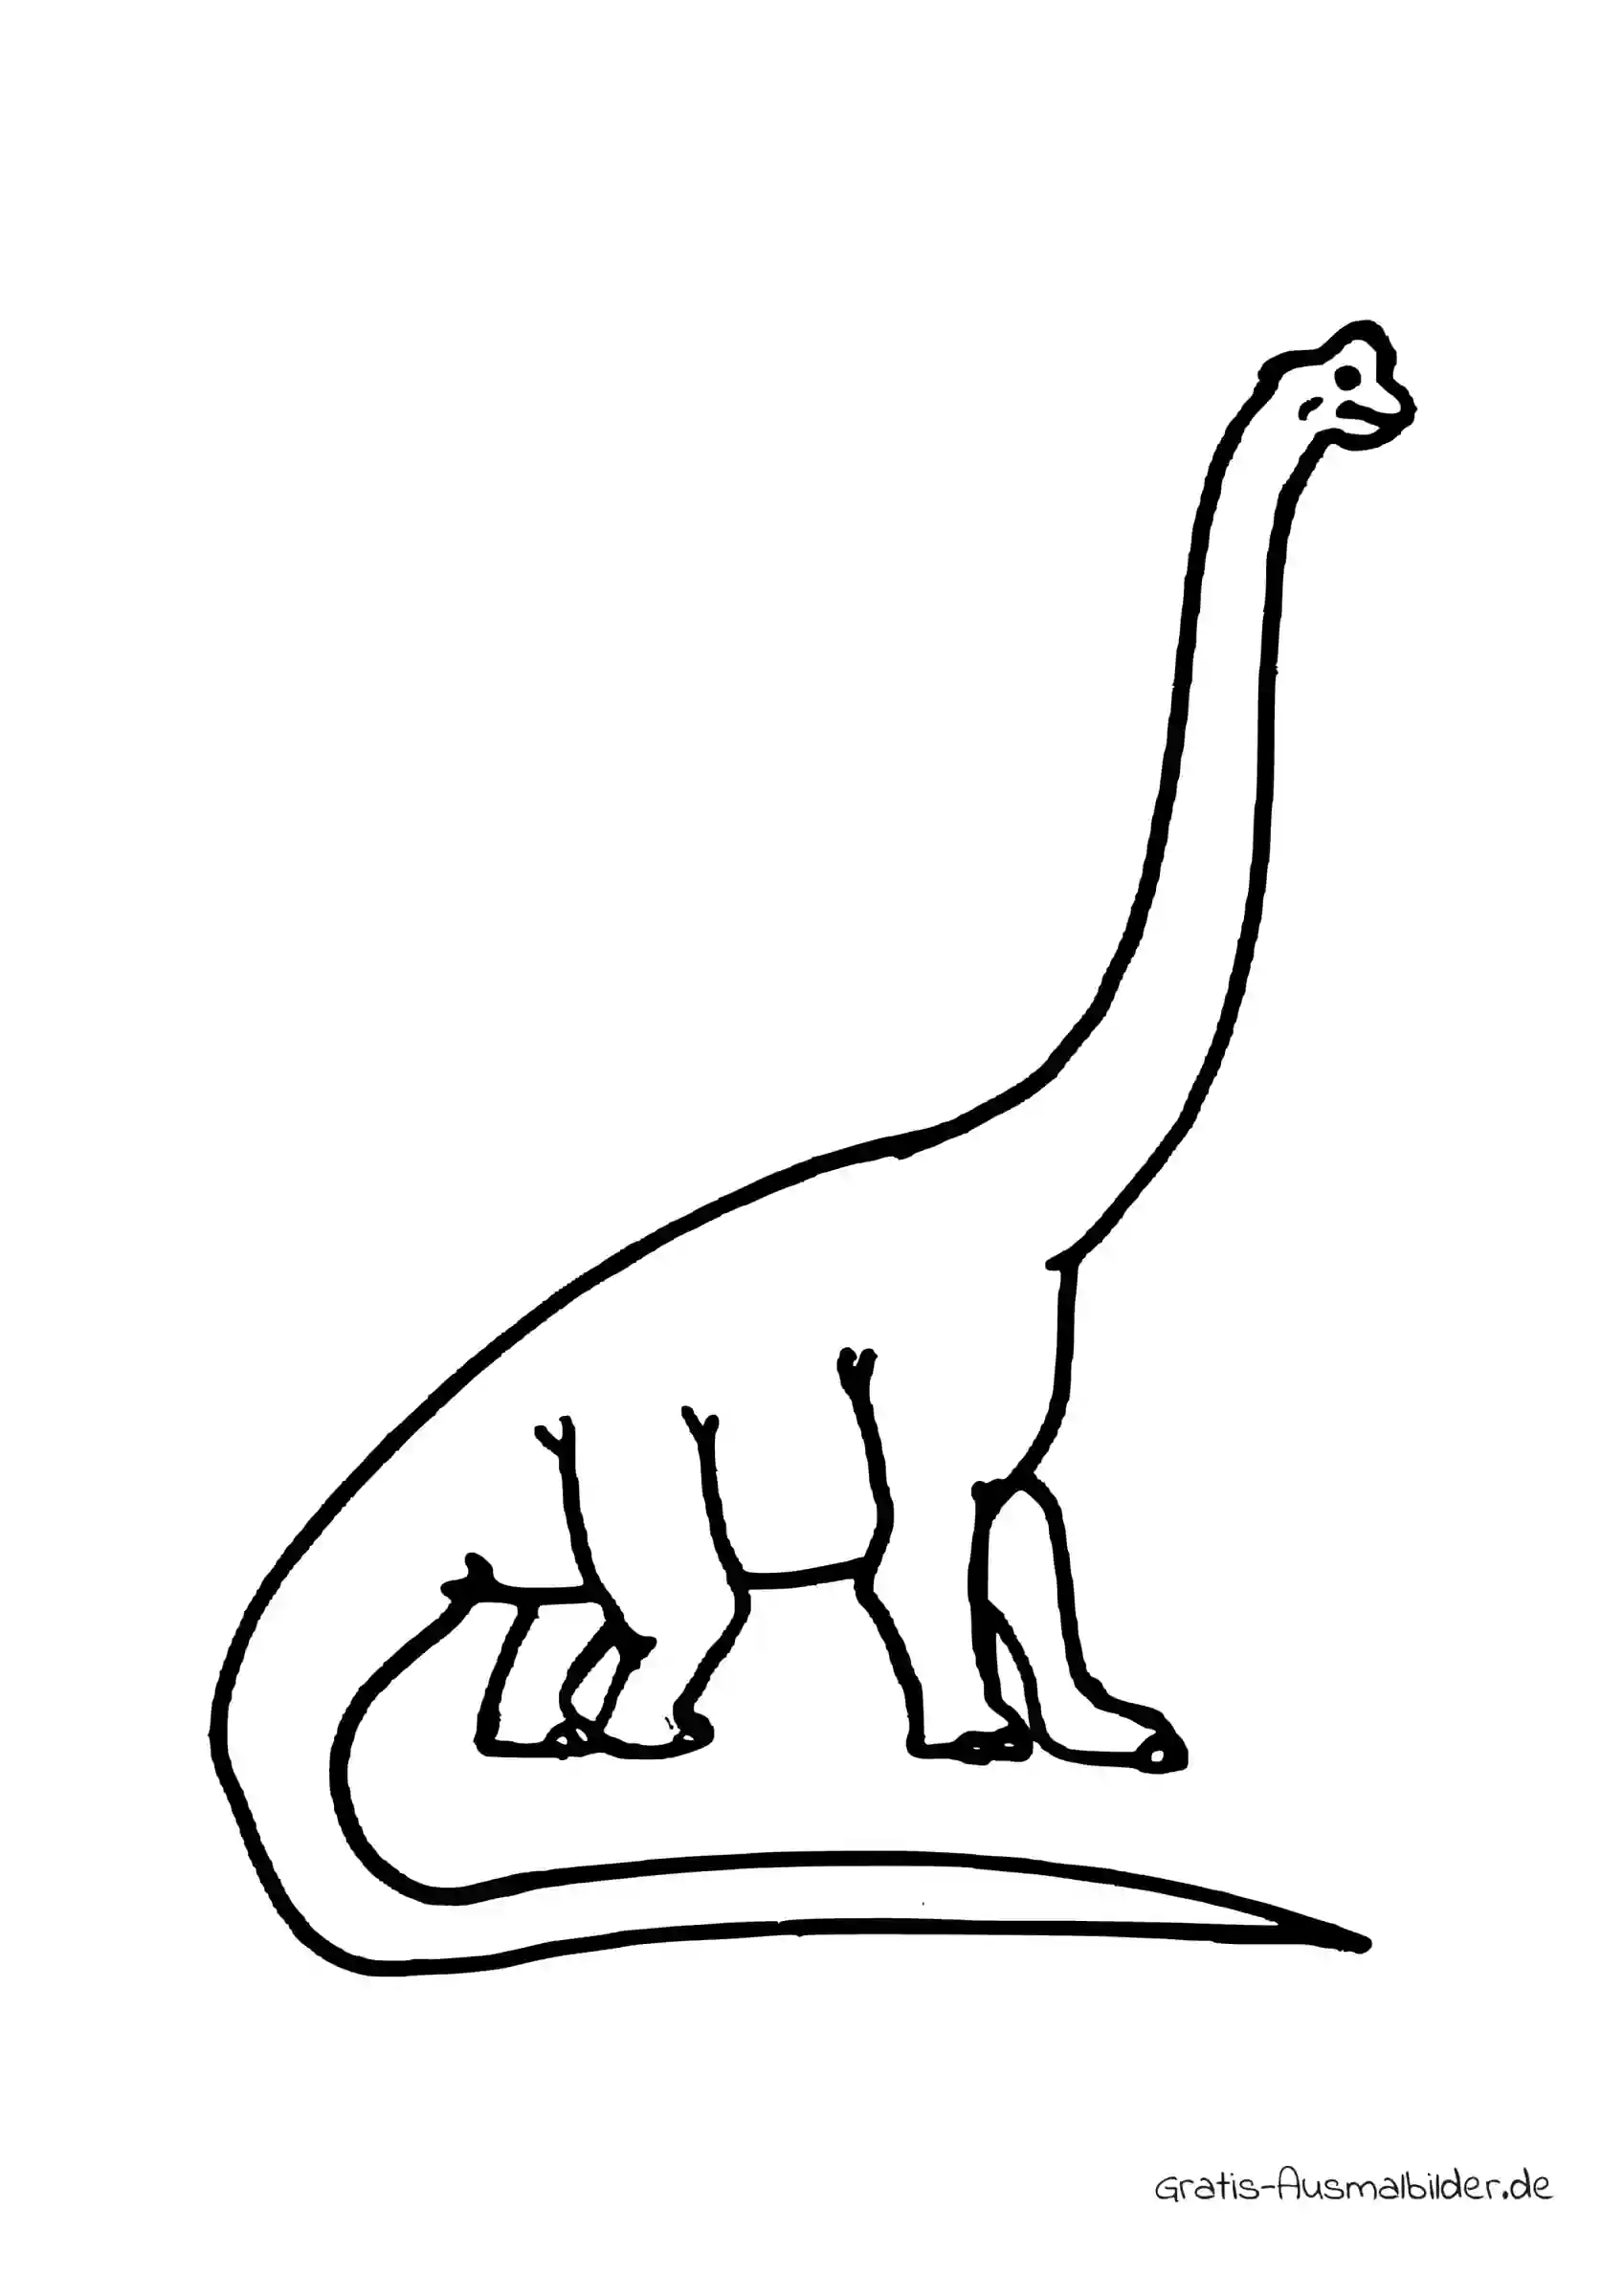 Ausmalbild Dino mit langem Hals